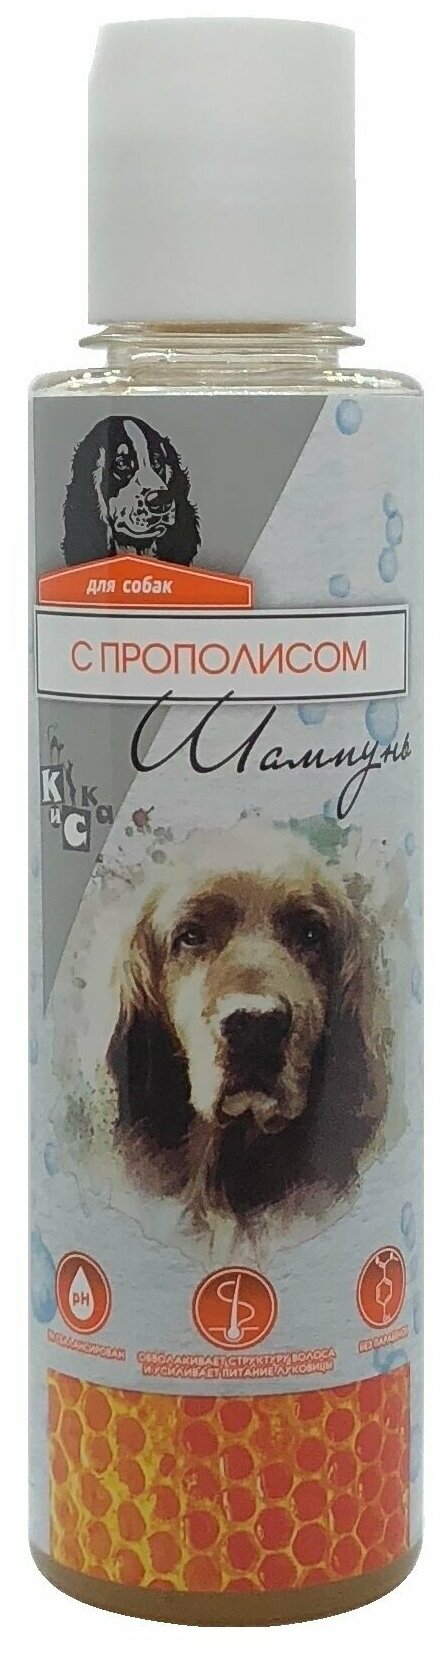 Зоошампунь с Прополисом для собак 240мл. 2019